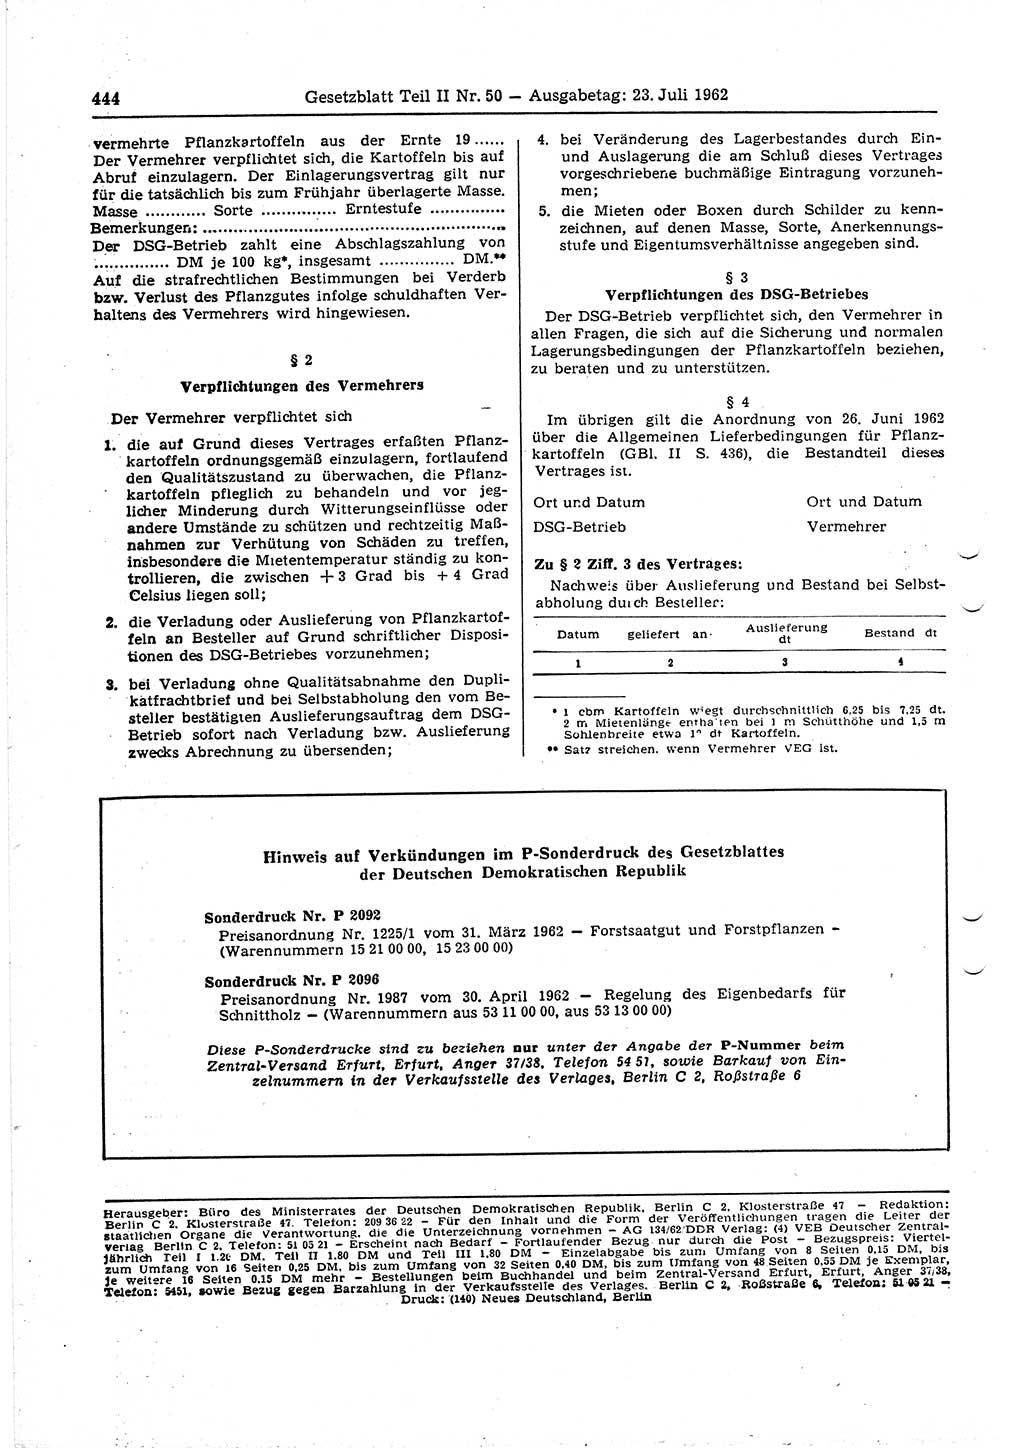 Gesetzblatt (GBl.) der Deutschen Demokratischen Republik (DDR) Teil ⅠⅠ 1962, Seite 444 (GBl. DDR ⅠⅠ 1962, S. 444)